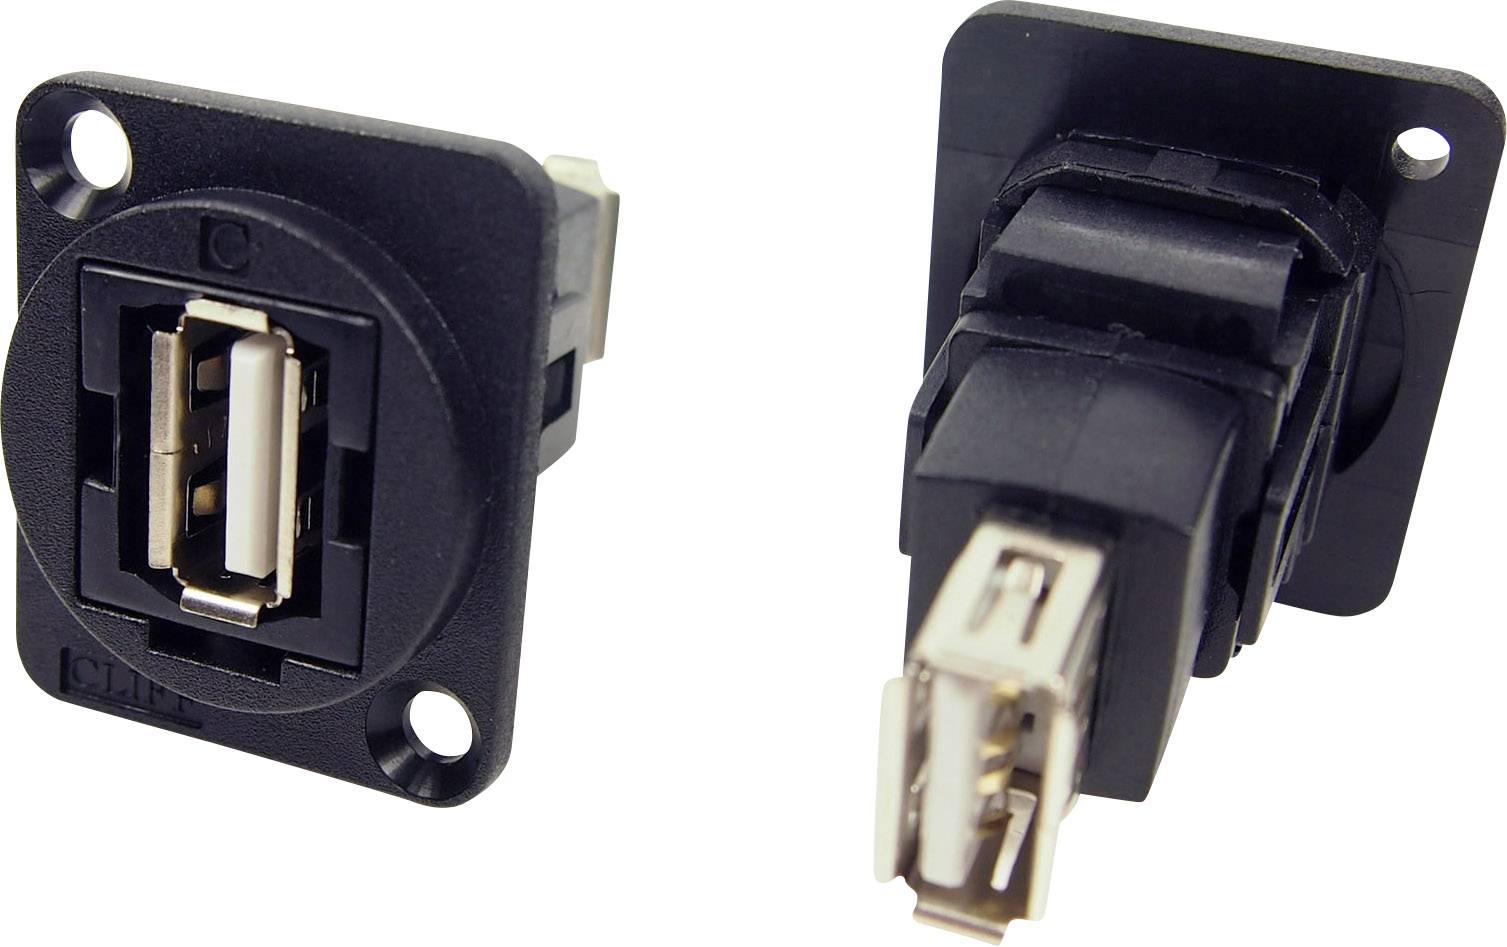 Usb разъем папа. Разъем юсб 2.0. Connector USB 2.0 A female Socket Panel Mount. USB блочный 2.0 разъём. USB-разъем в панель, для отв. 22мм.